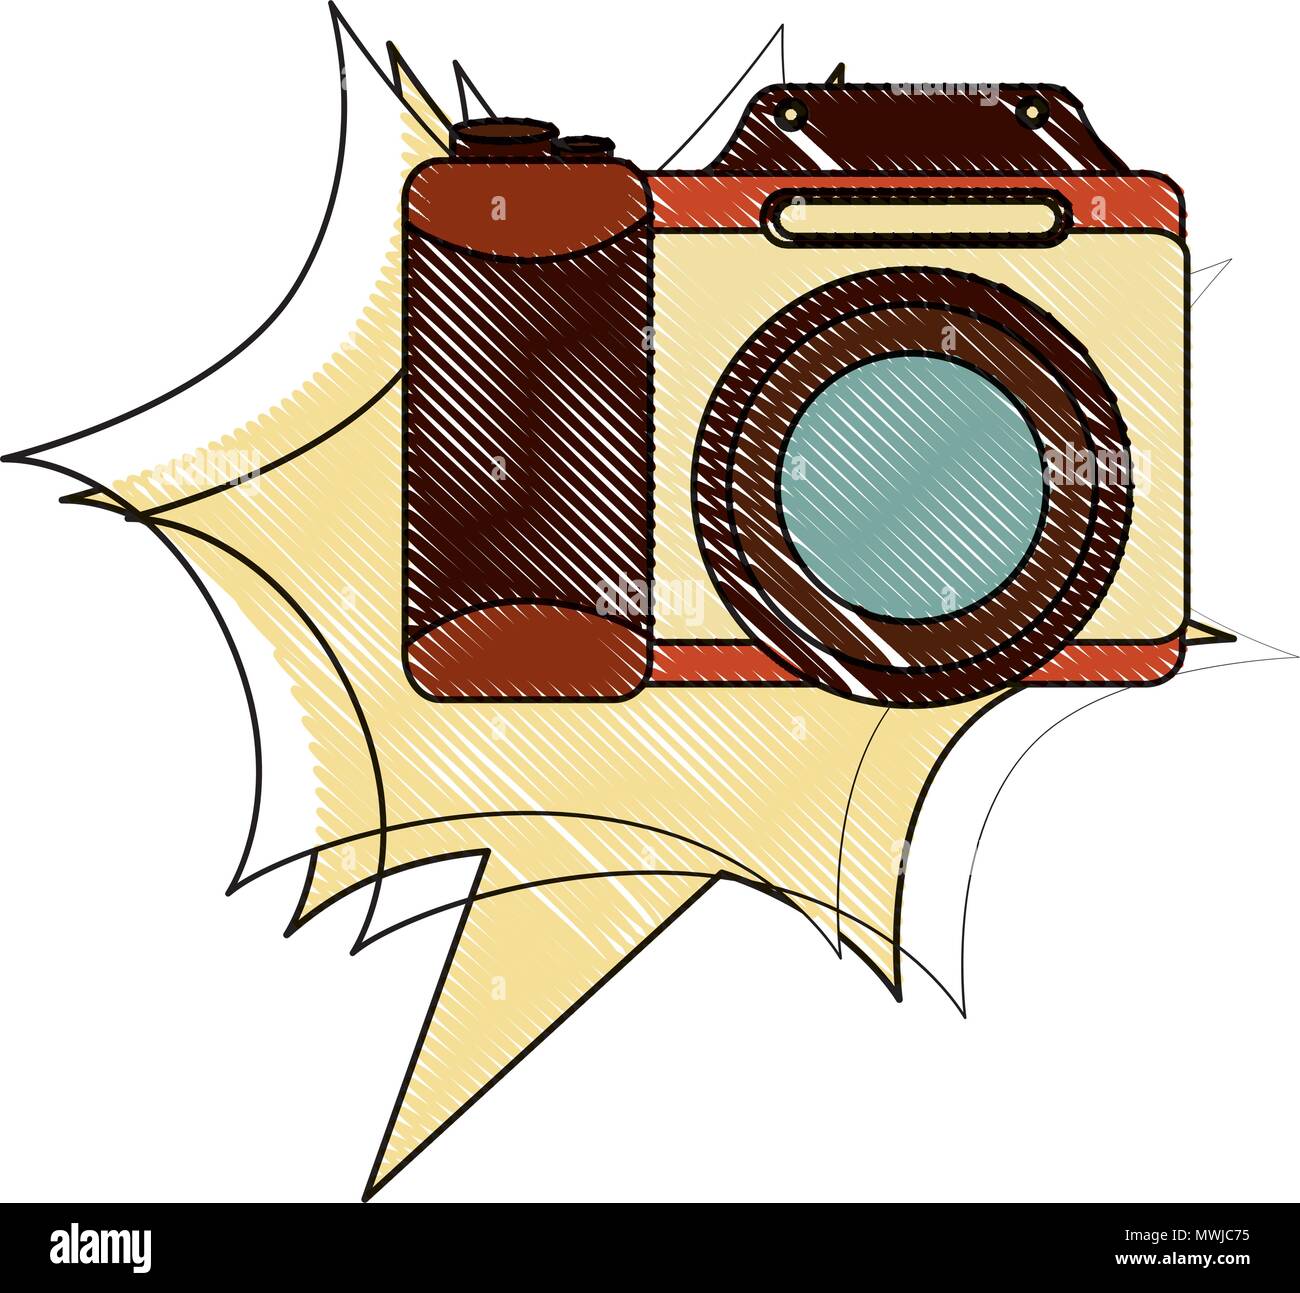 Macchina fotografica lente retro vintage illustrazione vettoriale disegno  Immagine e Vettoriale - Alamy